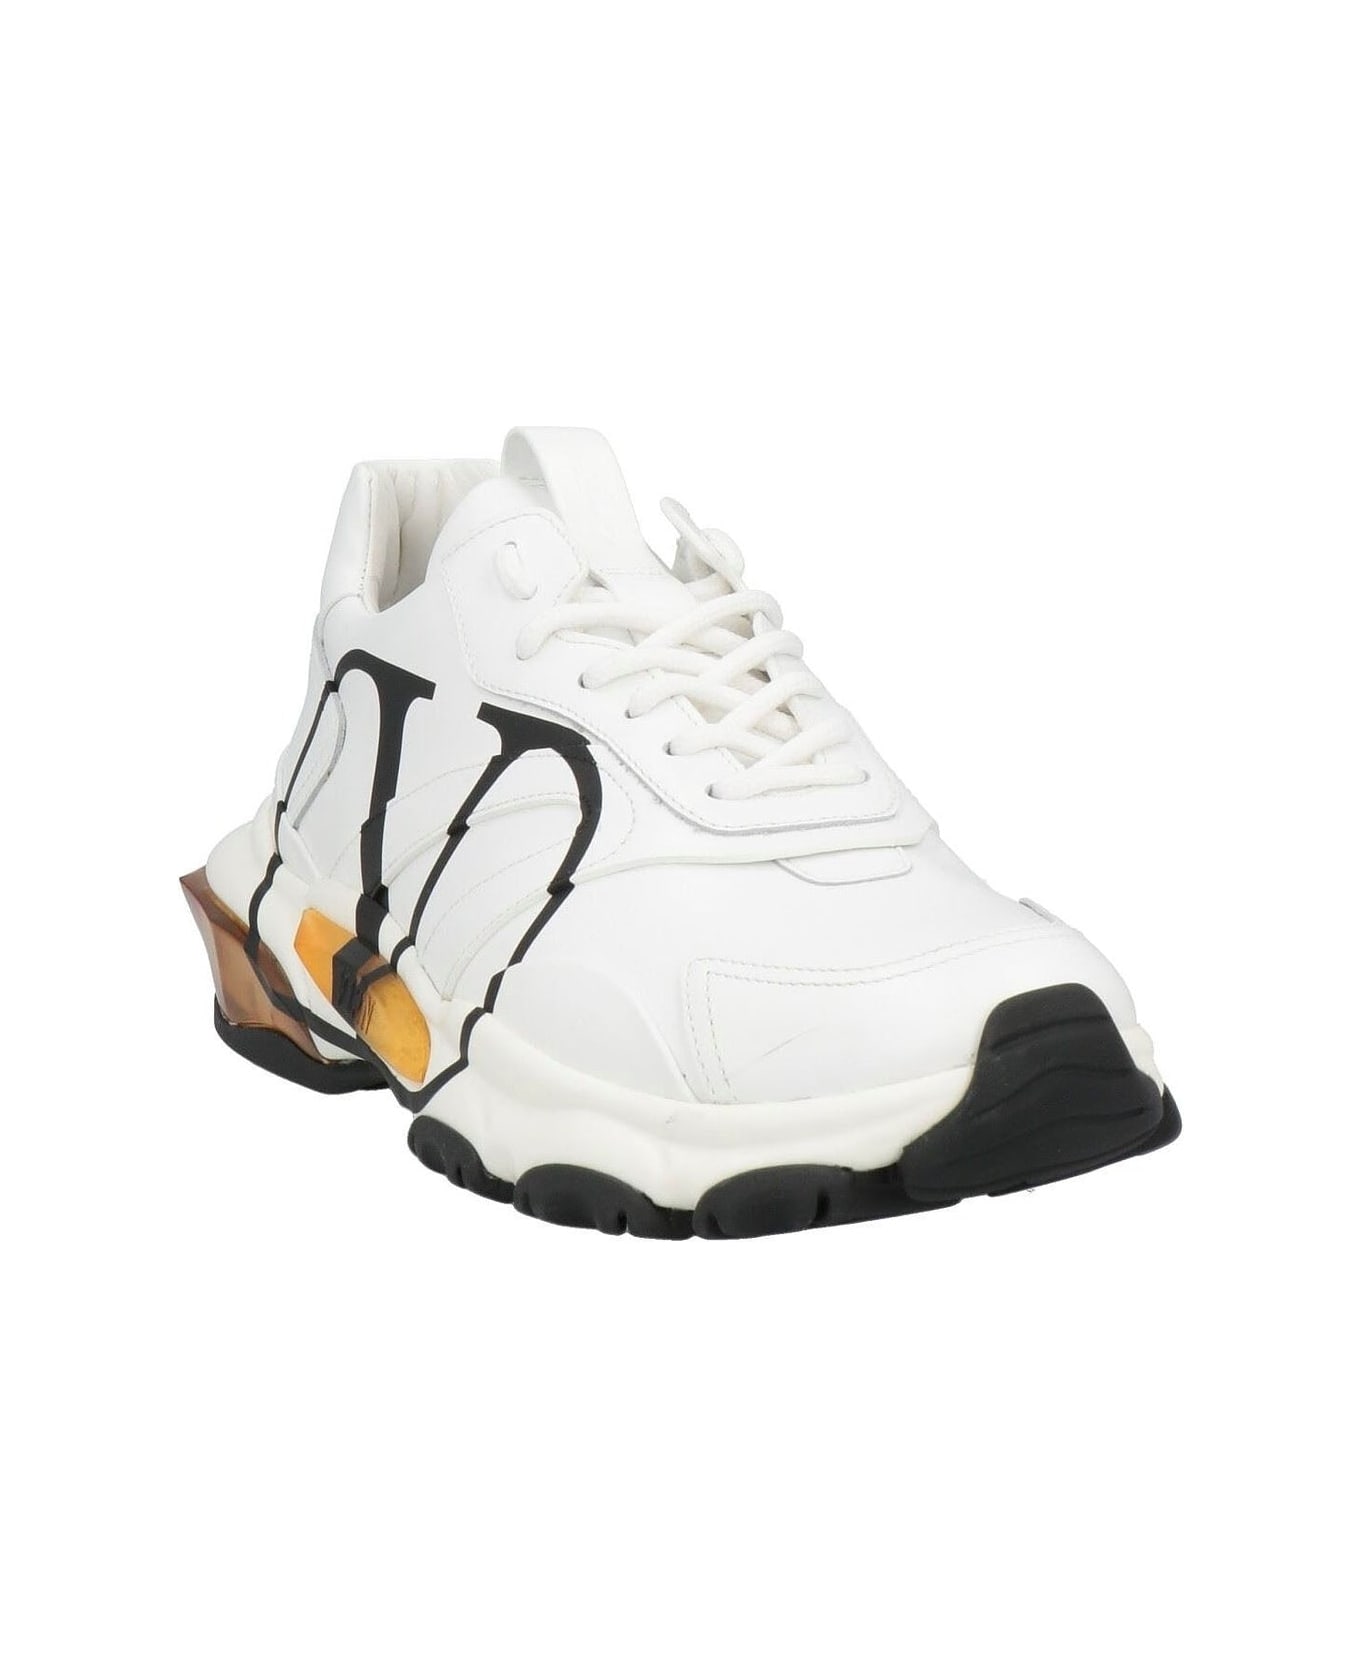 Valentino Garavani Garavani Bounce Sneakers - White スニーカー